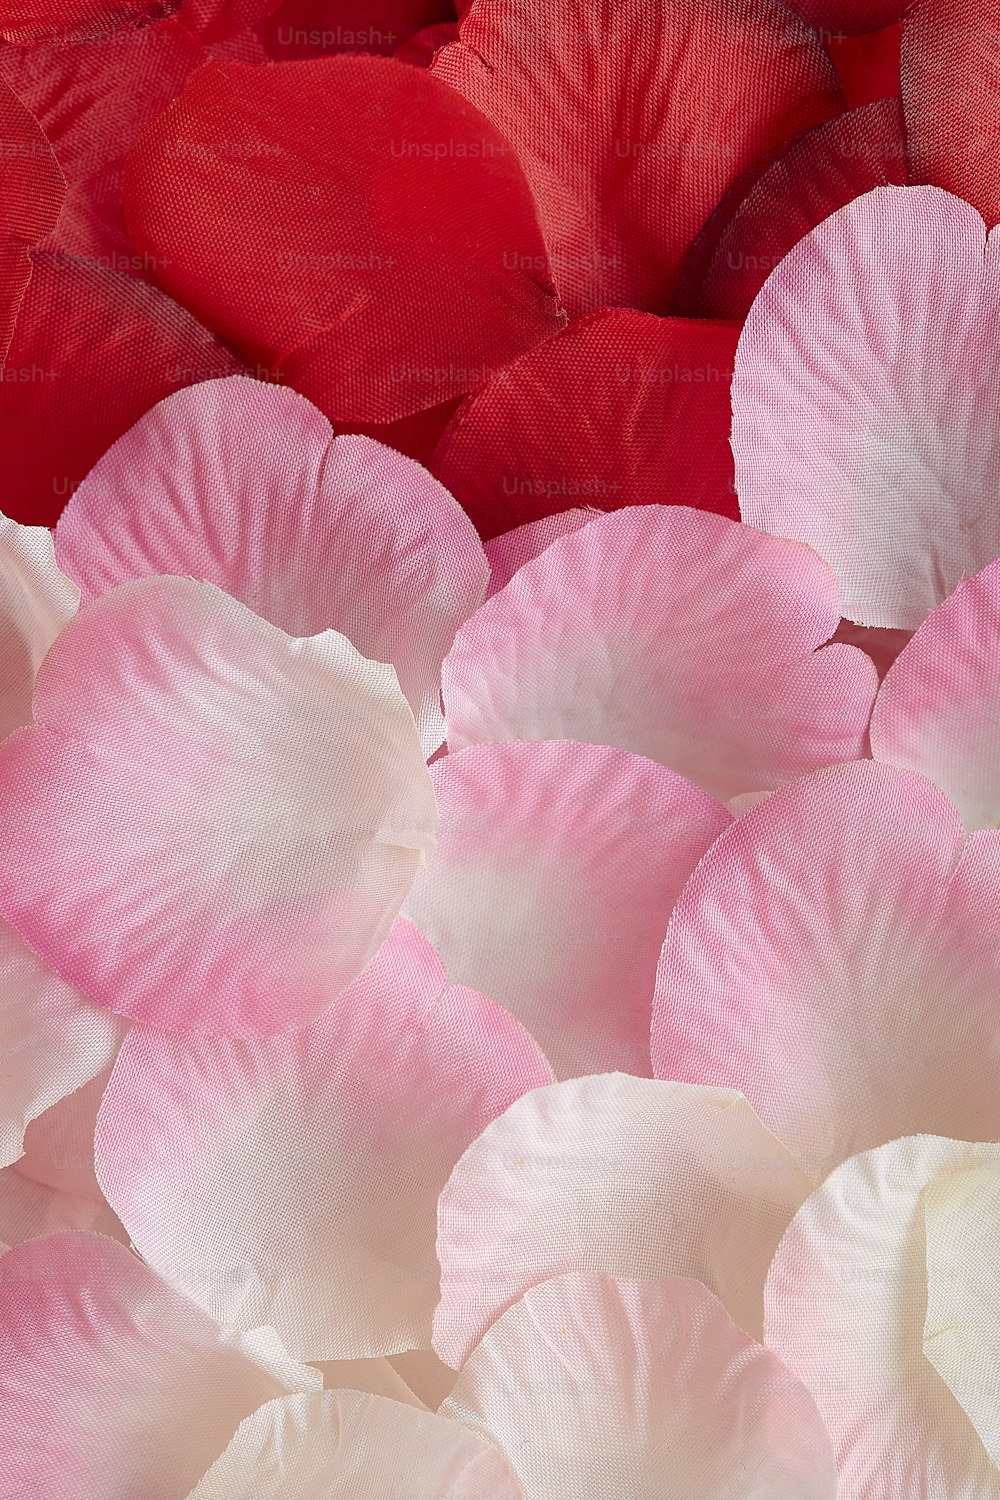 テーブルの上のピンクと白の花の束